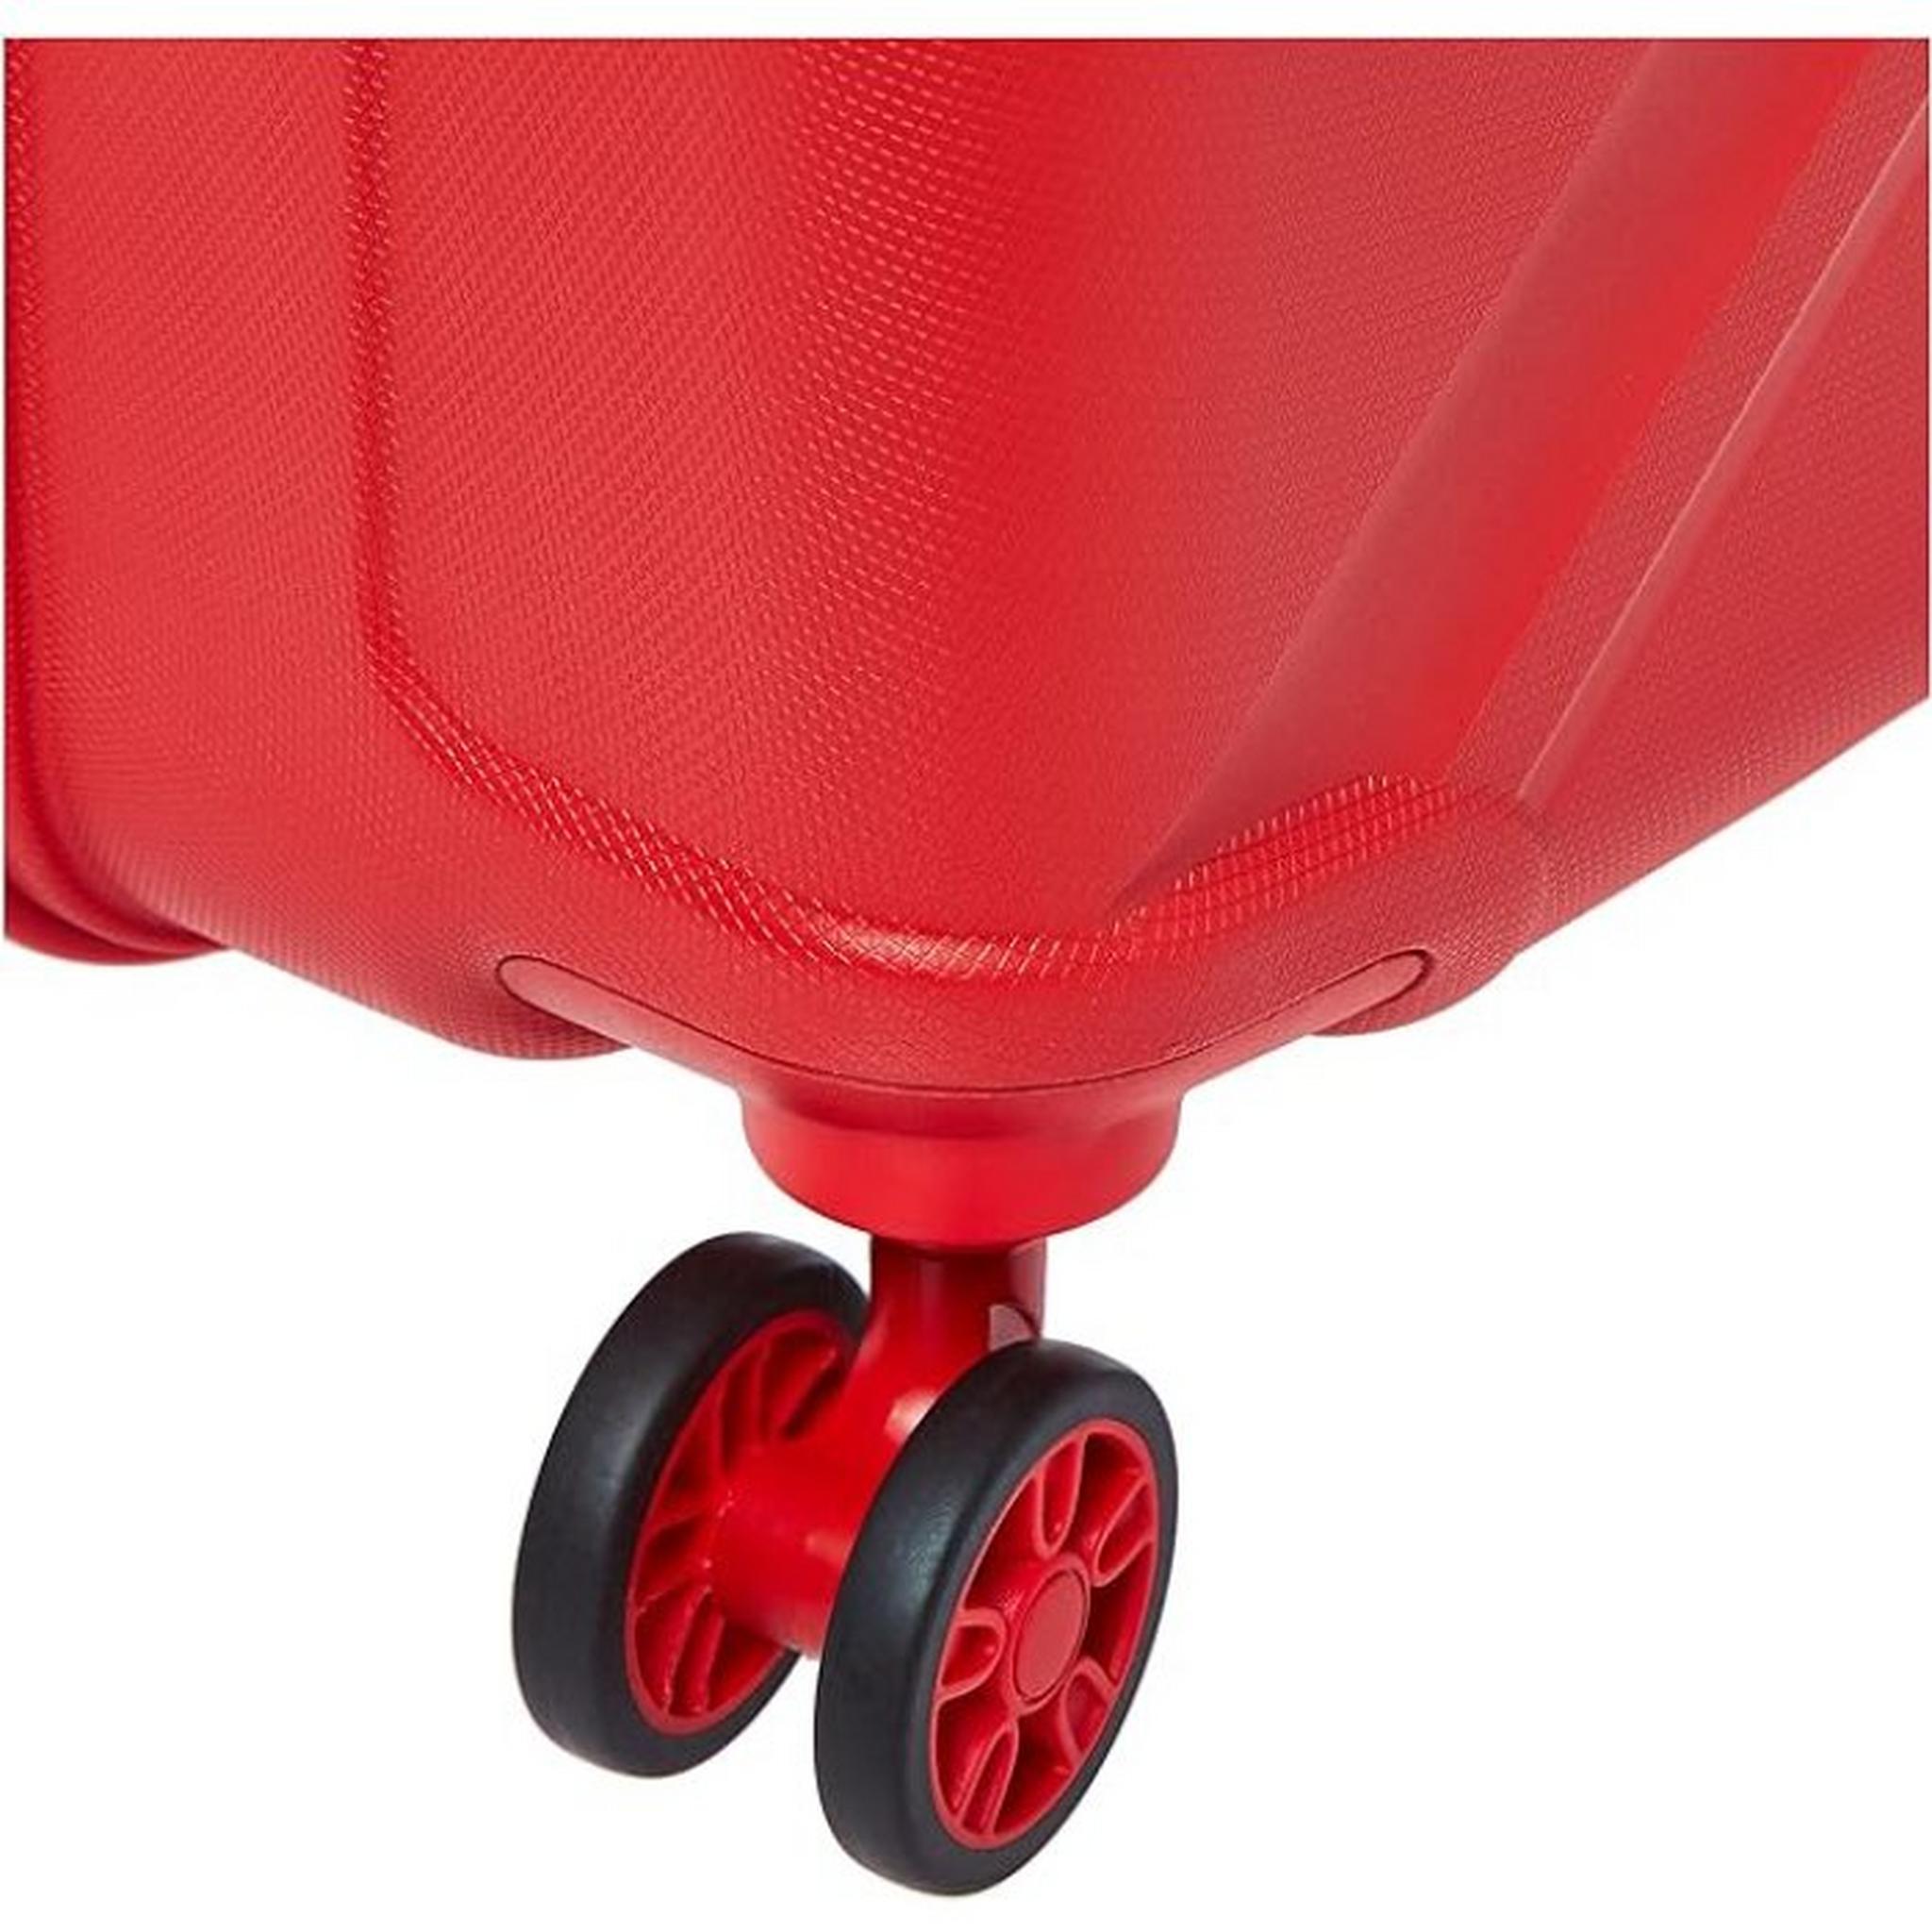 حقيبة سفر كروس بجوانب صلبة وعجلات دوارة من أمريكان توريستر(3 قطع)، 79+68+55 سم، LE2X00104 – أحمر